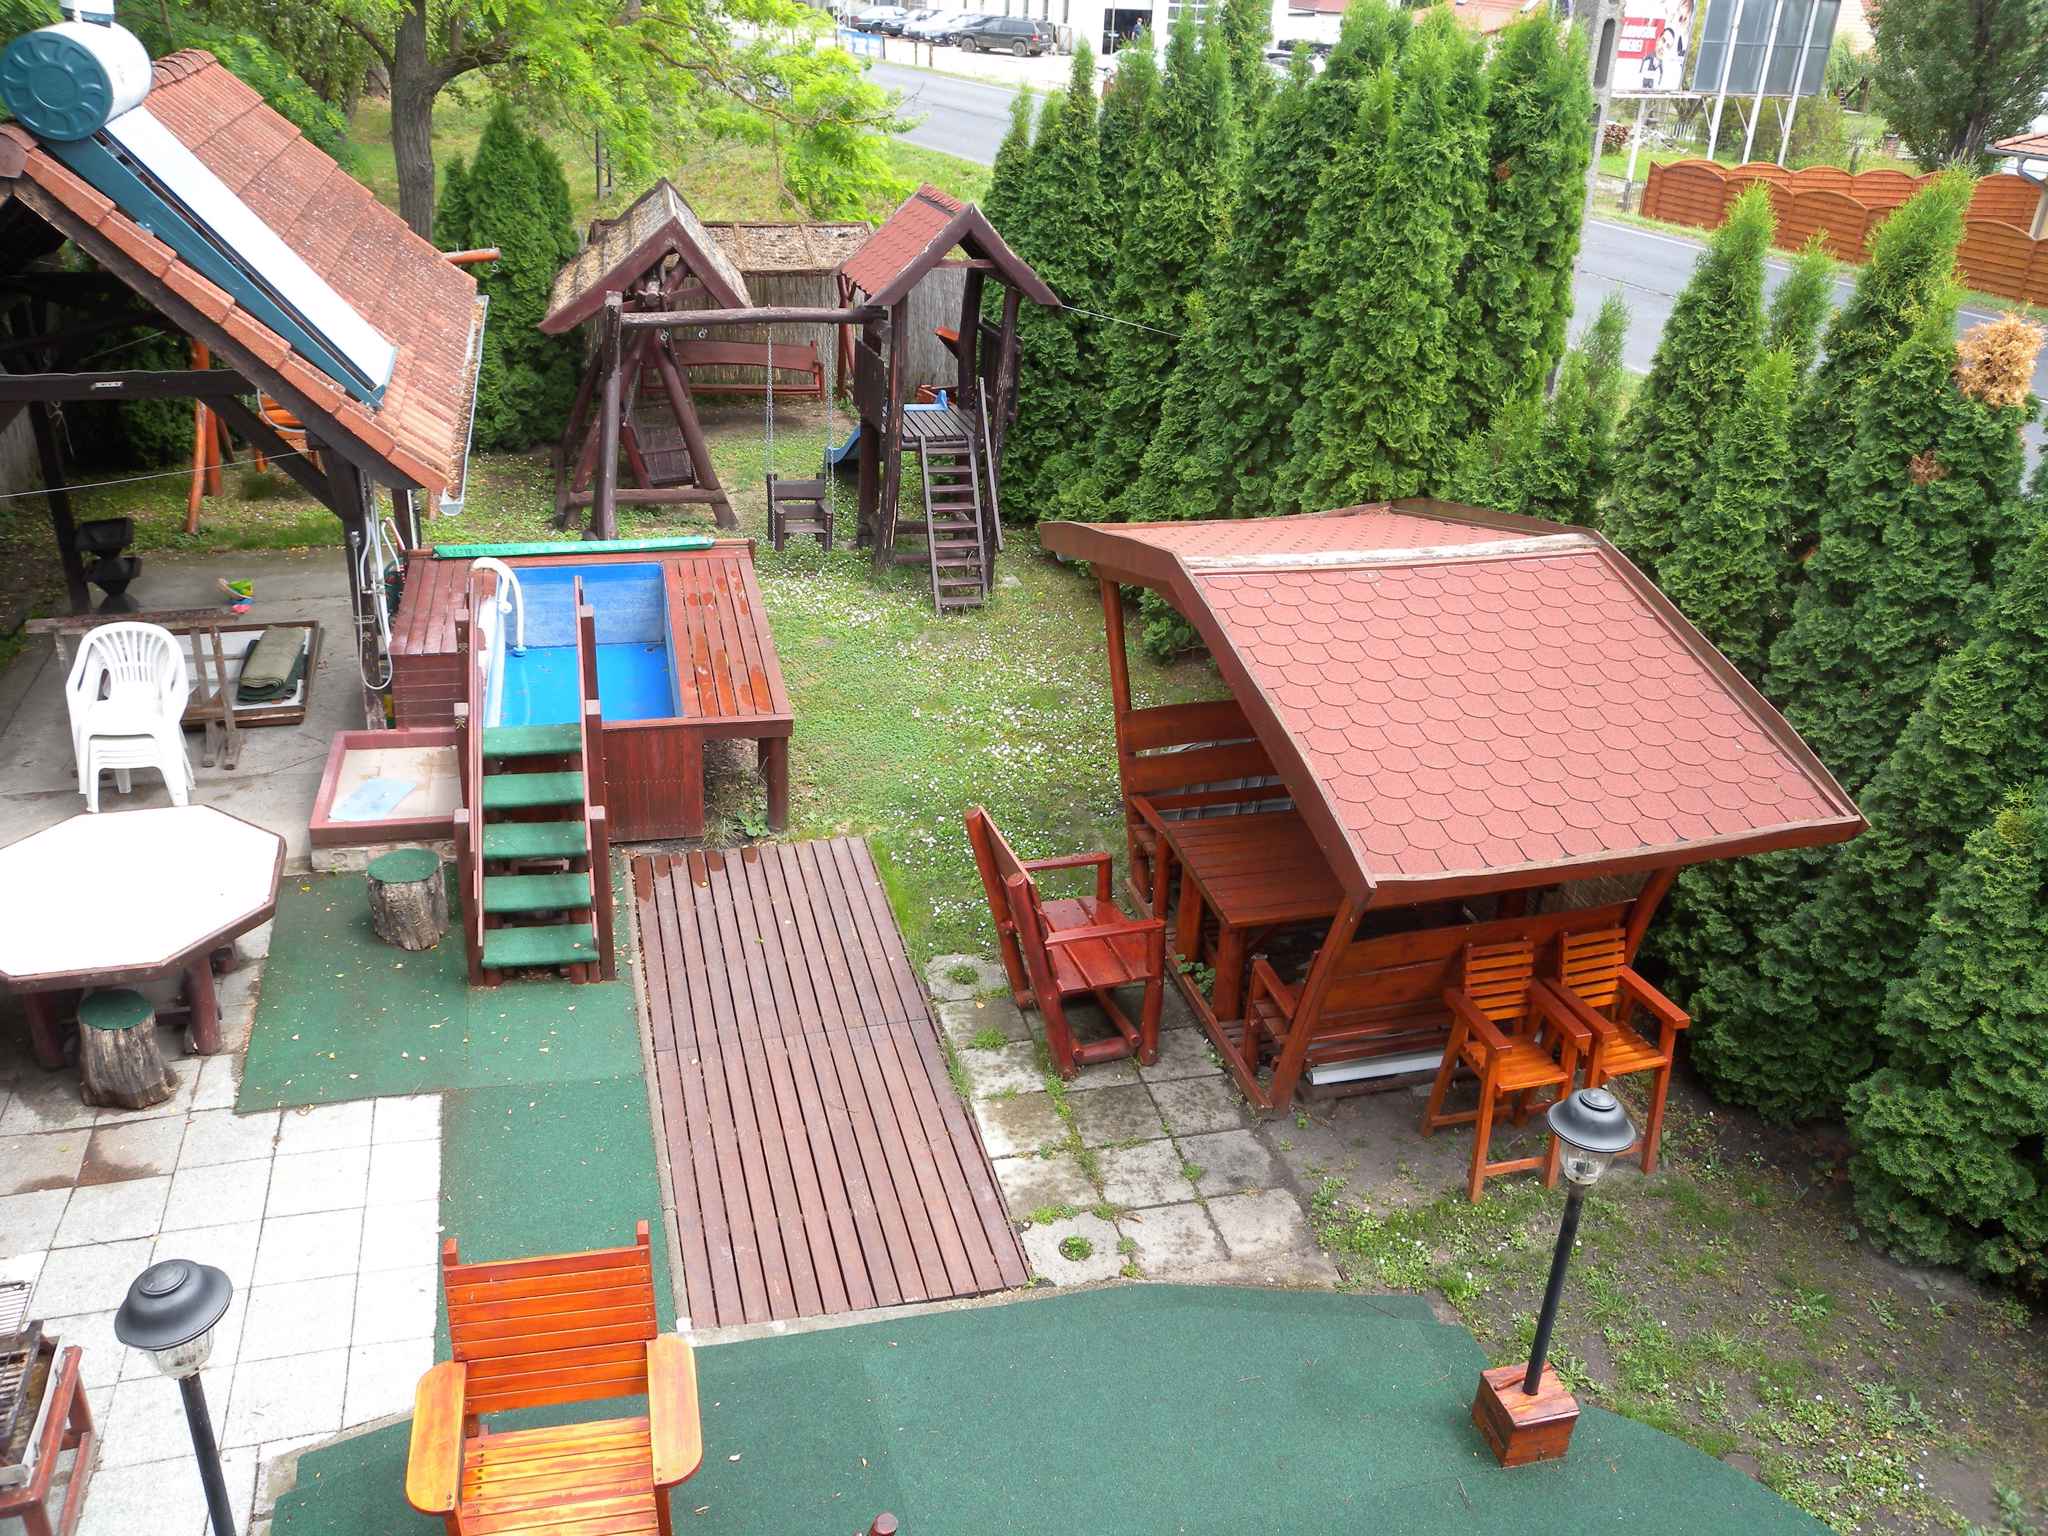 Ferienhaus mit Pool, Kinderschaukel und Rutsche Ferienhaus in Ungarn